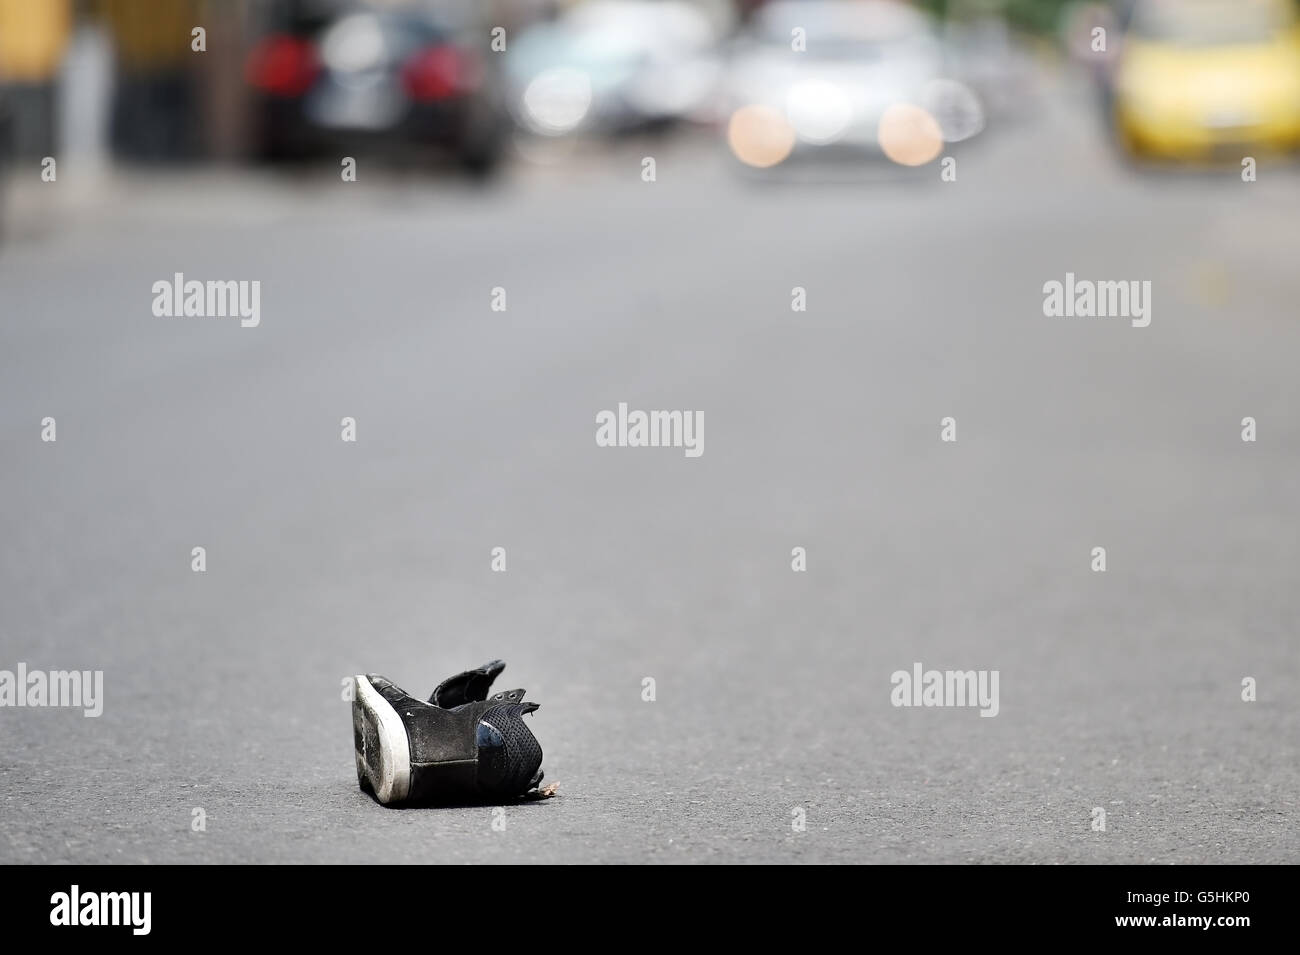 Ses chaussures dans la rue avec des voitures en arrière-plan après victime a été heurté par le véhicule Banque D'Images